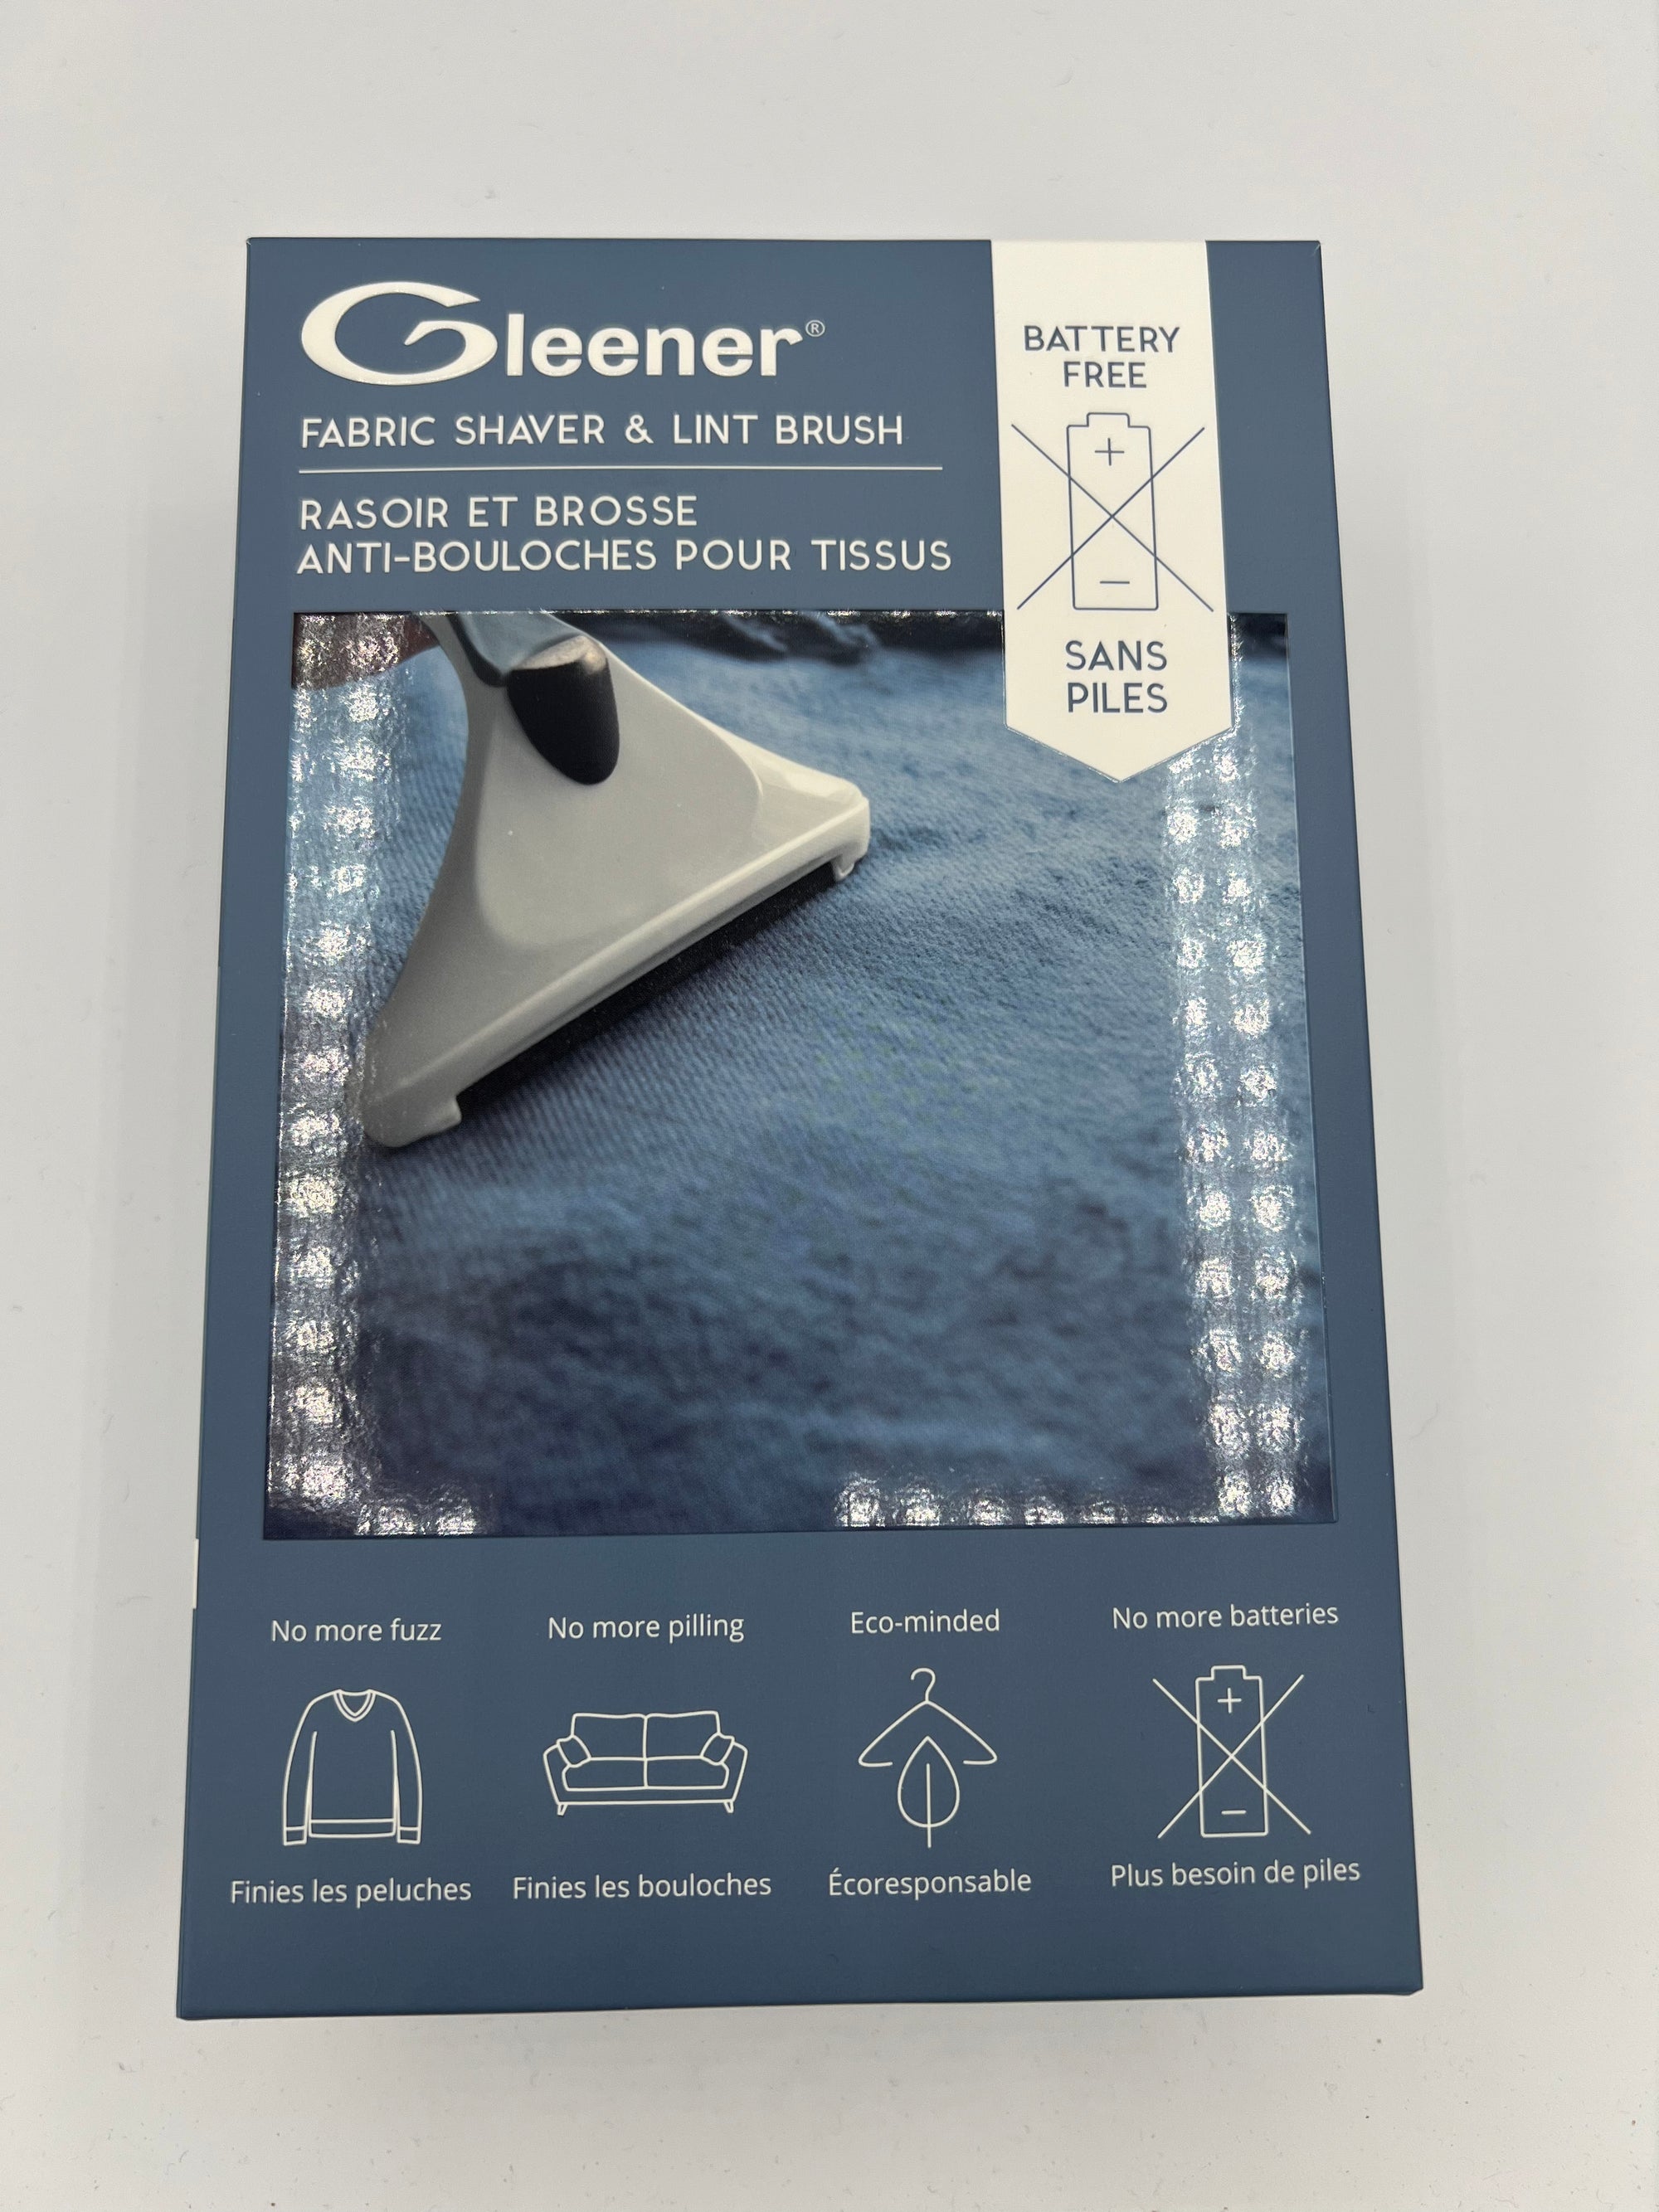 Gleener Fabric Shaver & Lint Brush